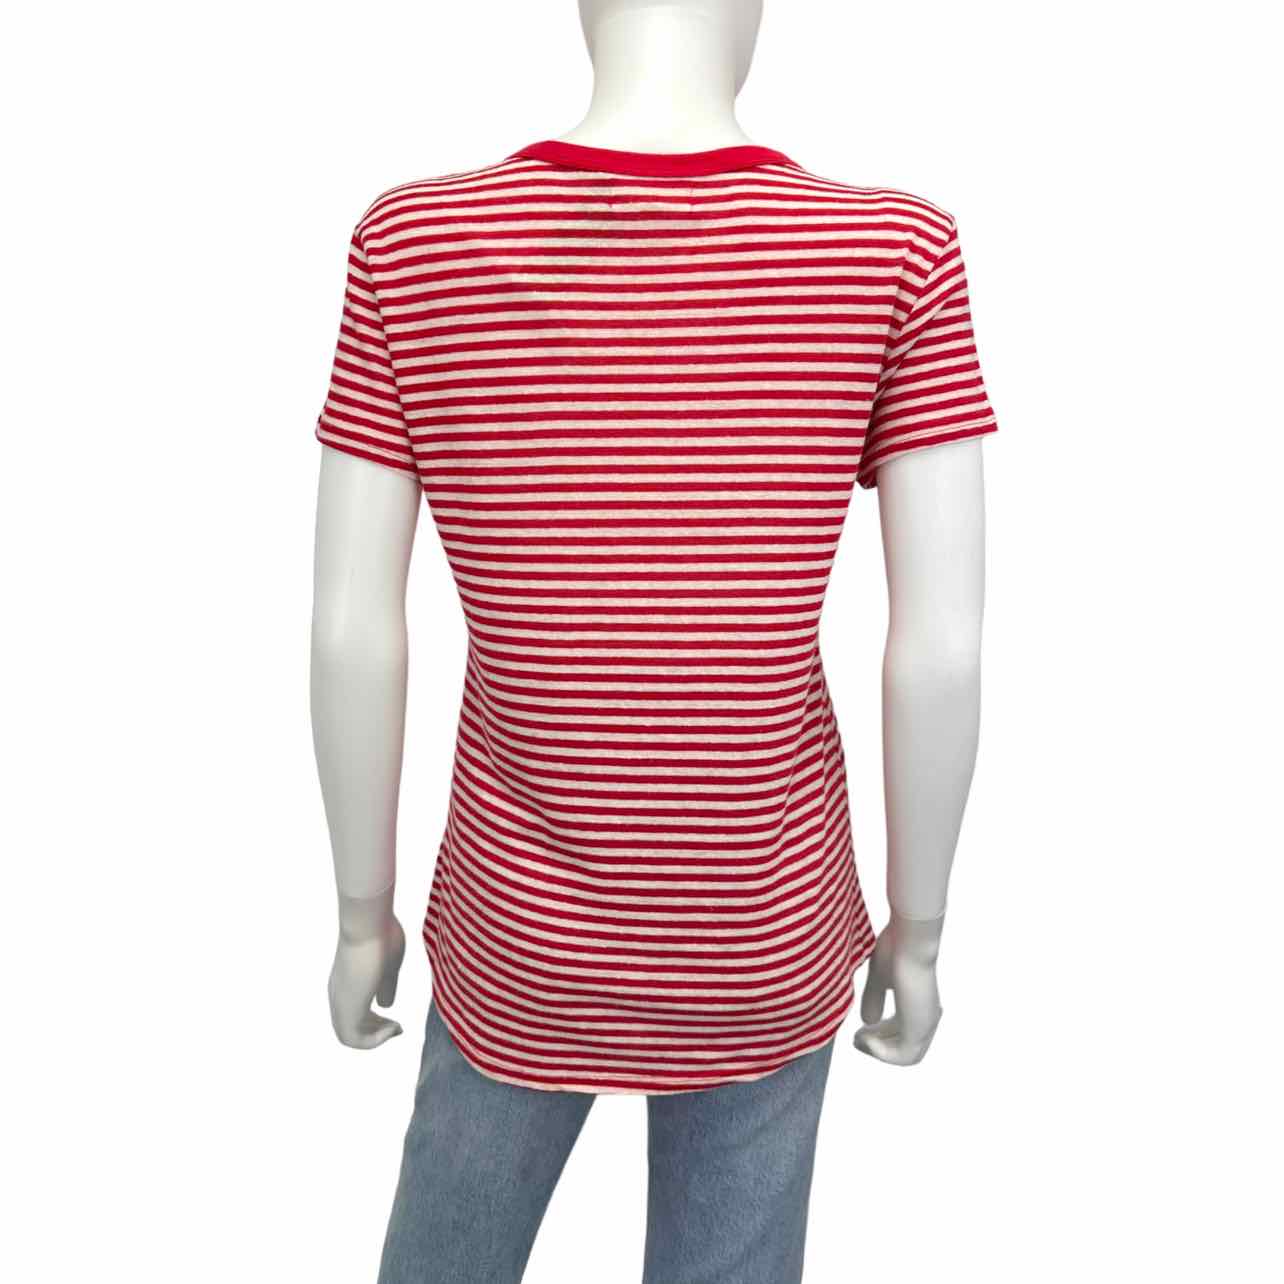 Velvet by Graham & Spencer White & Red Striped Linen Blend T-Shirt Size S